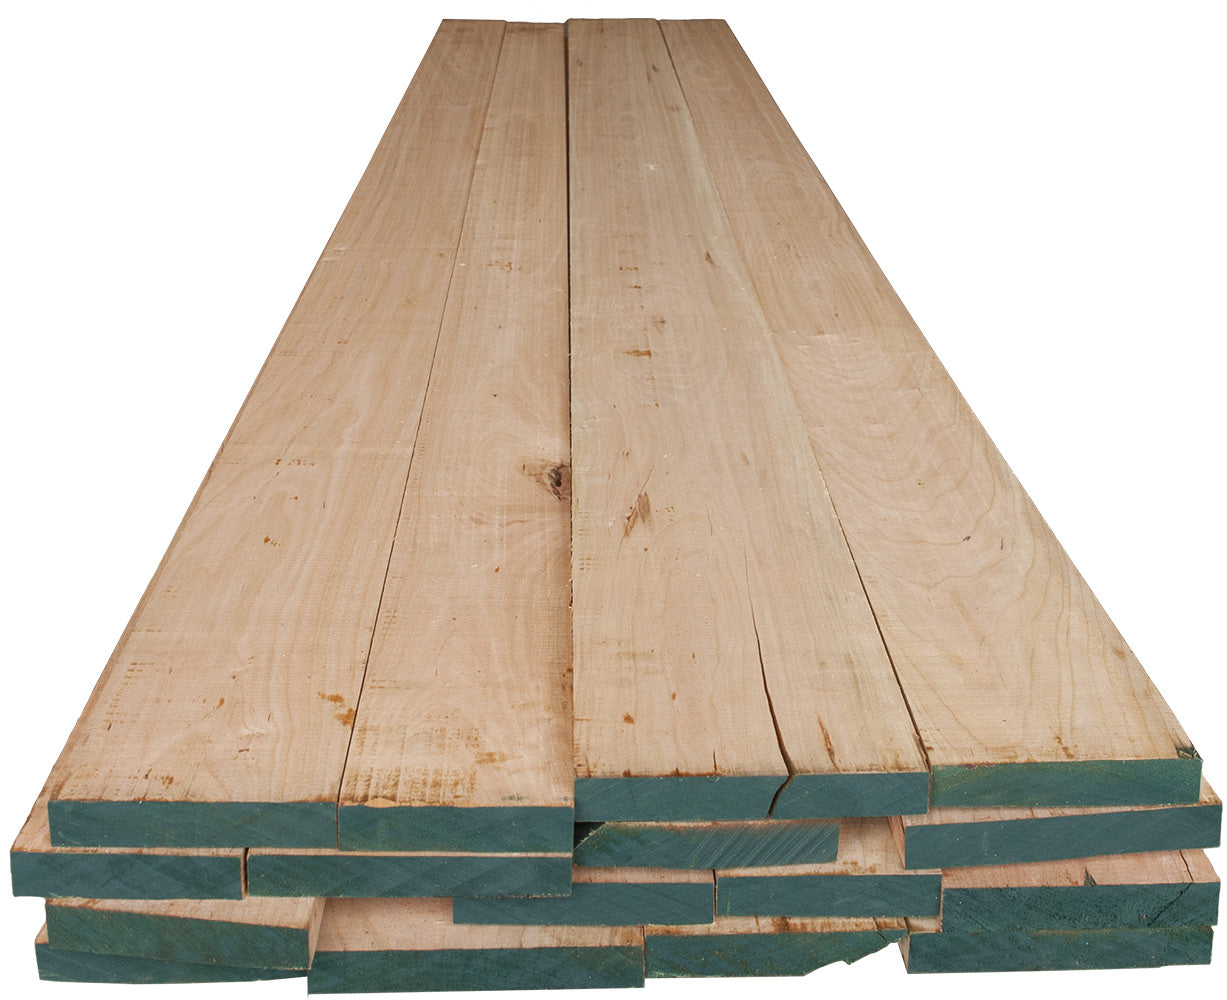 4/4 Black Cherry Lumber, 25–100 Bd Ft Pack